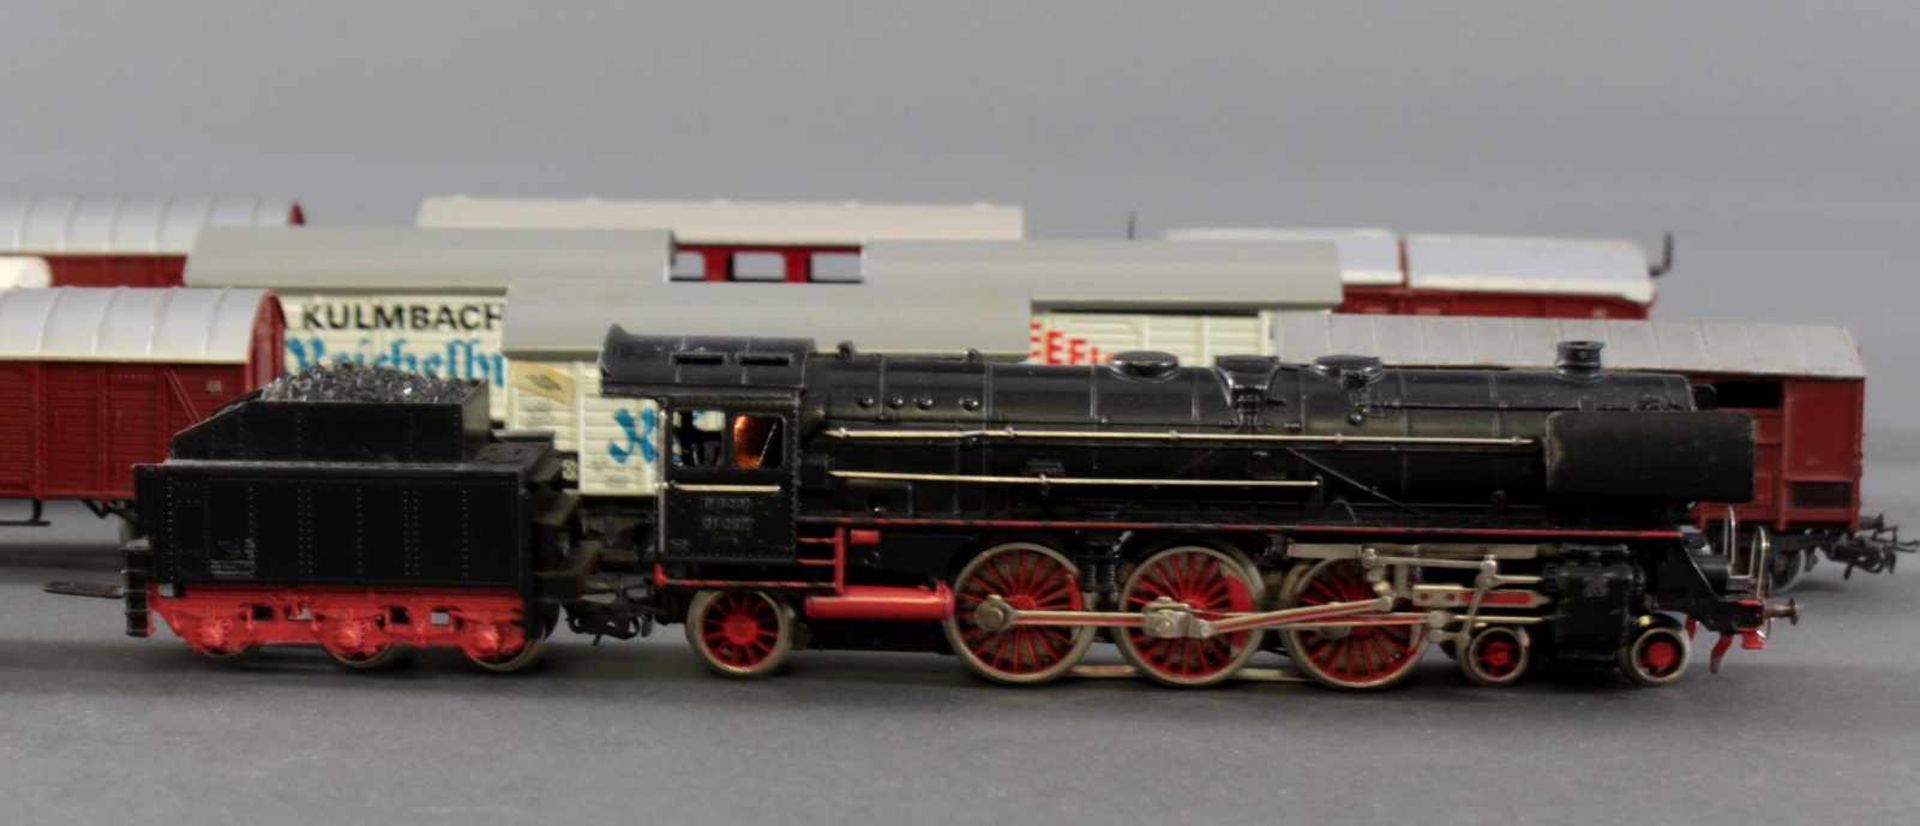 Märklin Dampflok F800 BR 01 097 mit 10 Güterwaggons aus Kunststoff und Blech, Spur H0 - Image 4 of 4